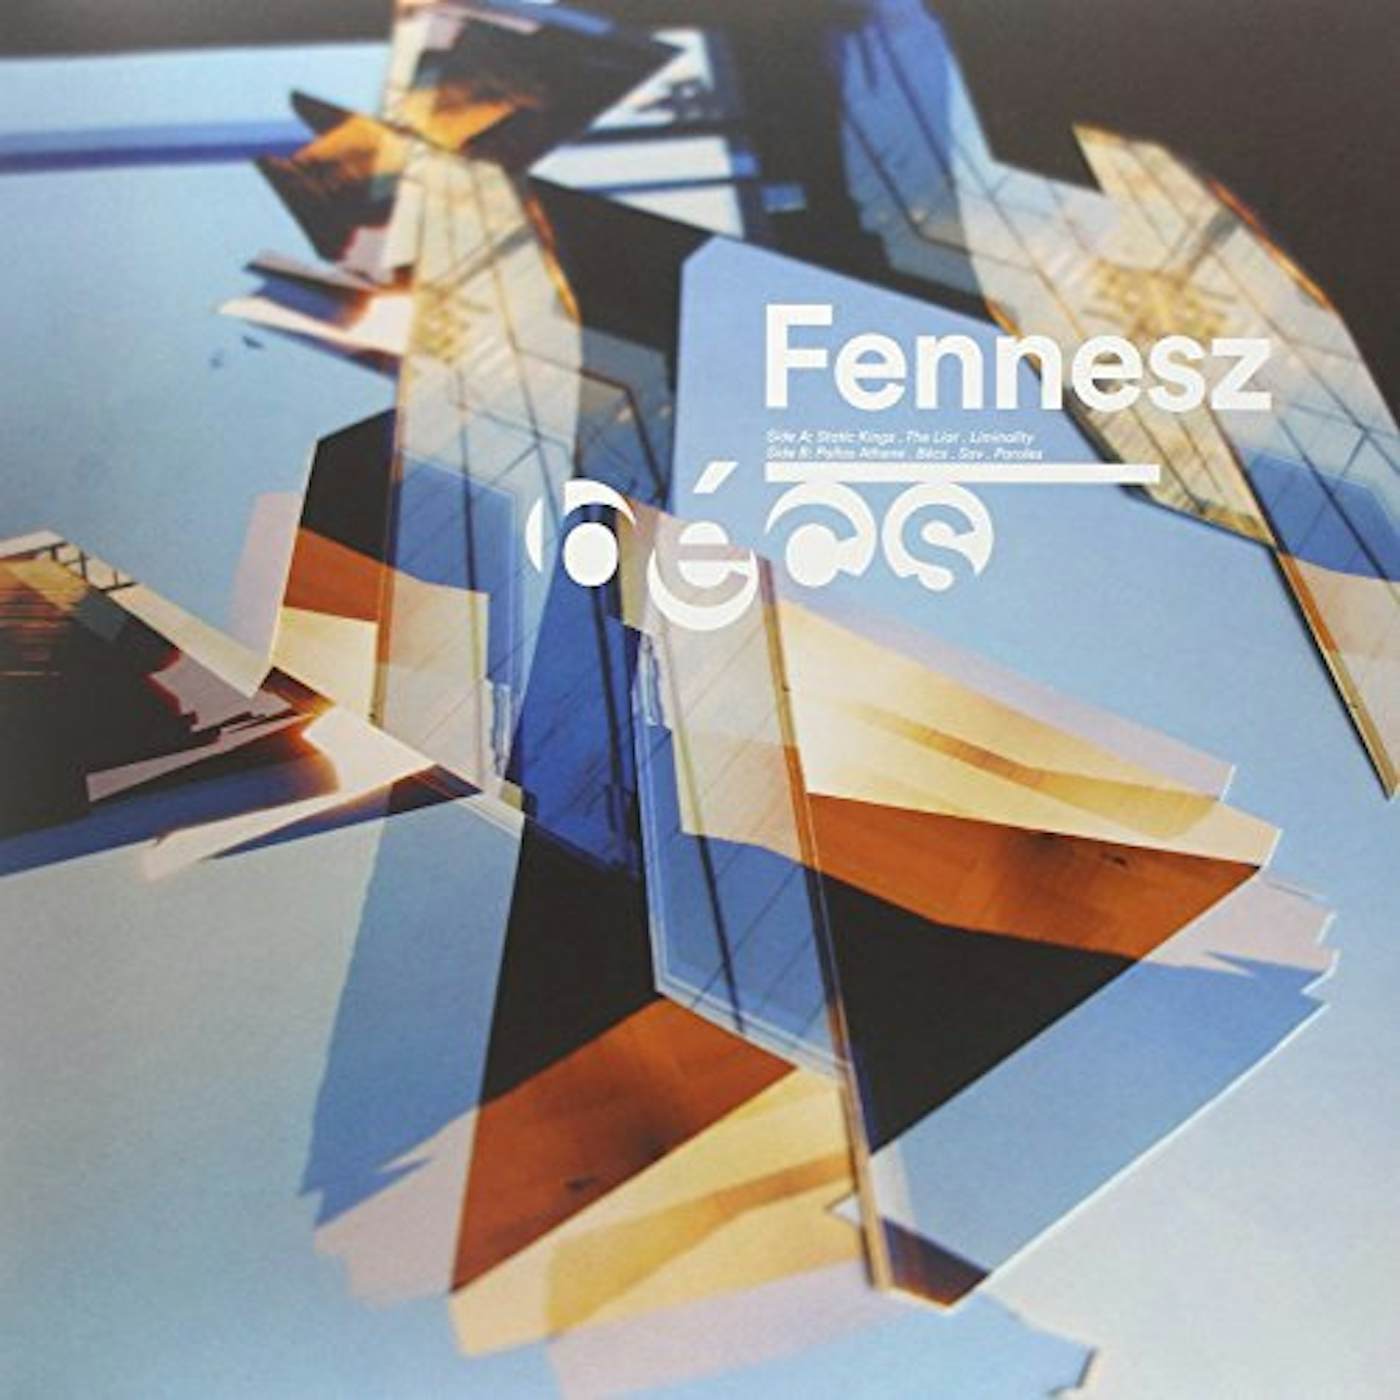 Fennesz Becs Vinyl Record